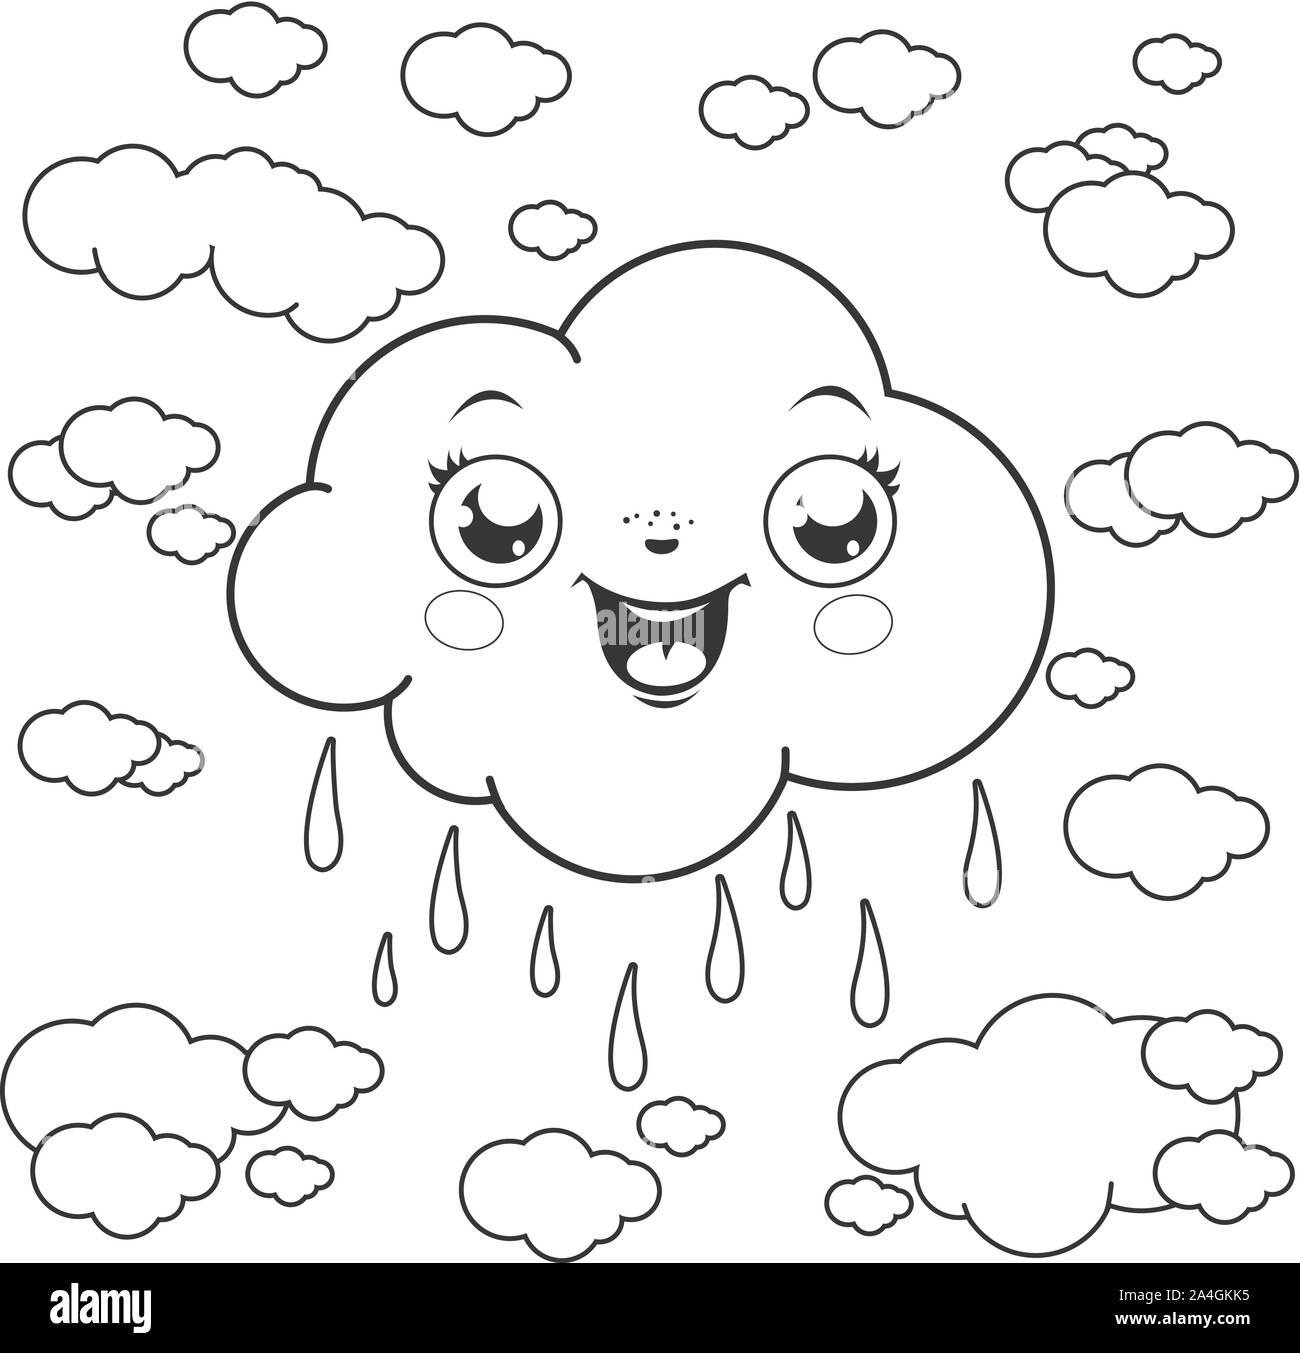 Illustrazione della pioggia nuvole in cielo. Il vettore in bianco e nero nella pagina di colorazione Illustrazione Vettoriale